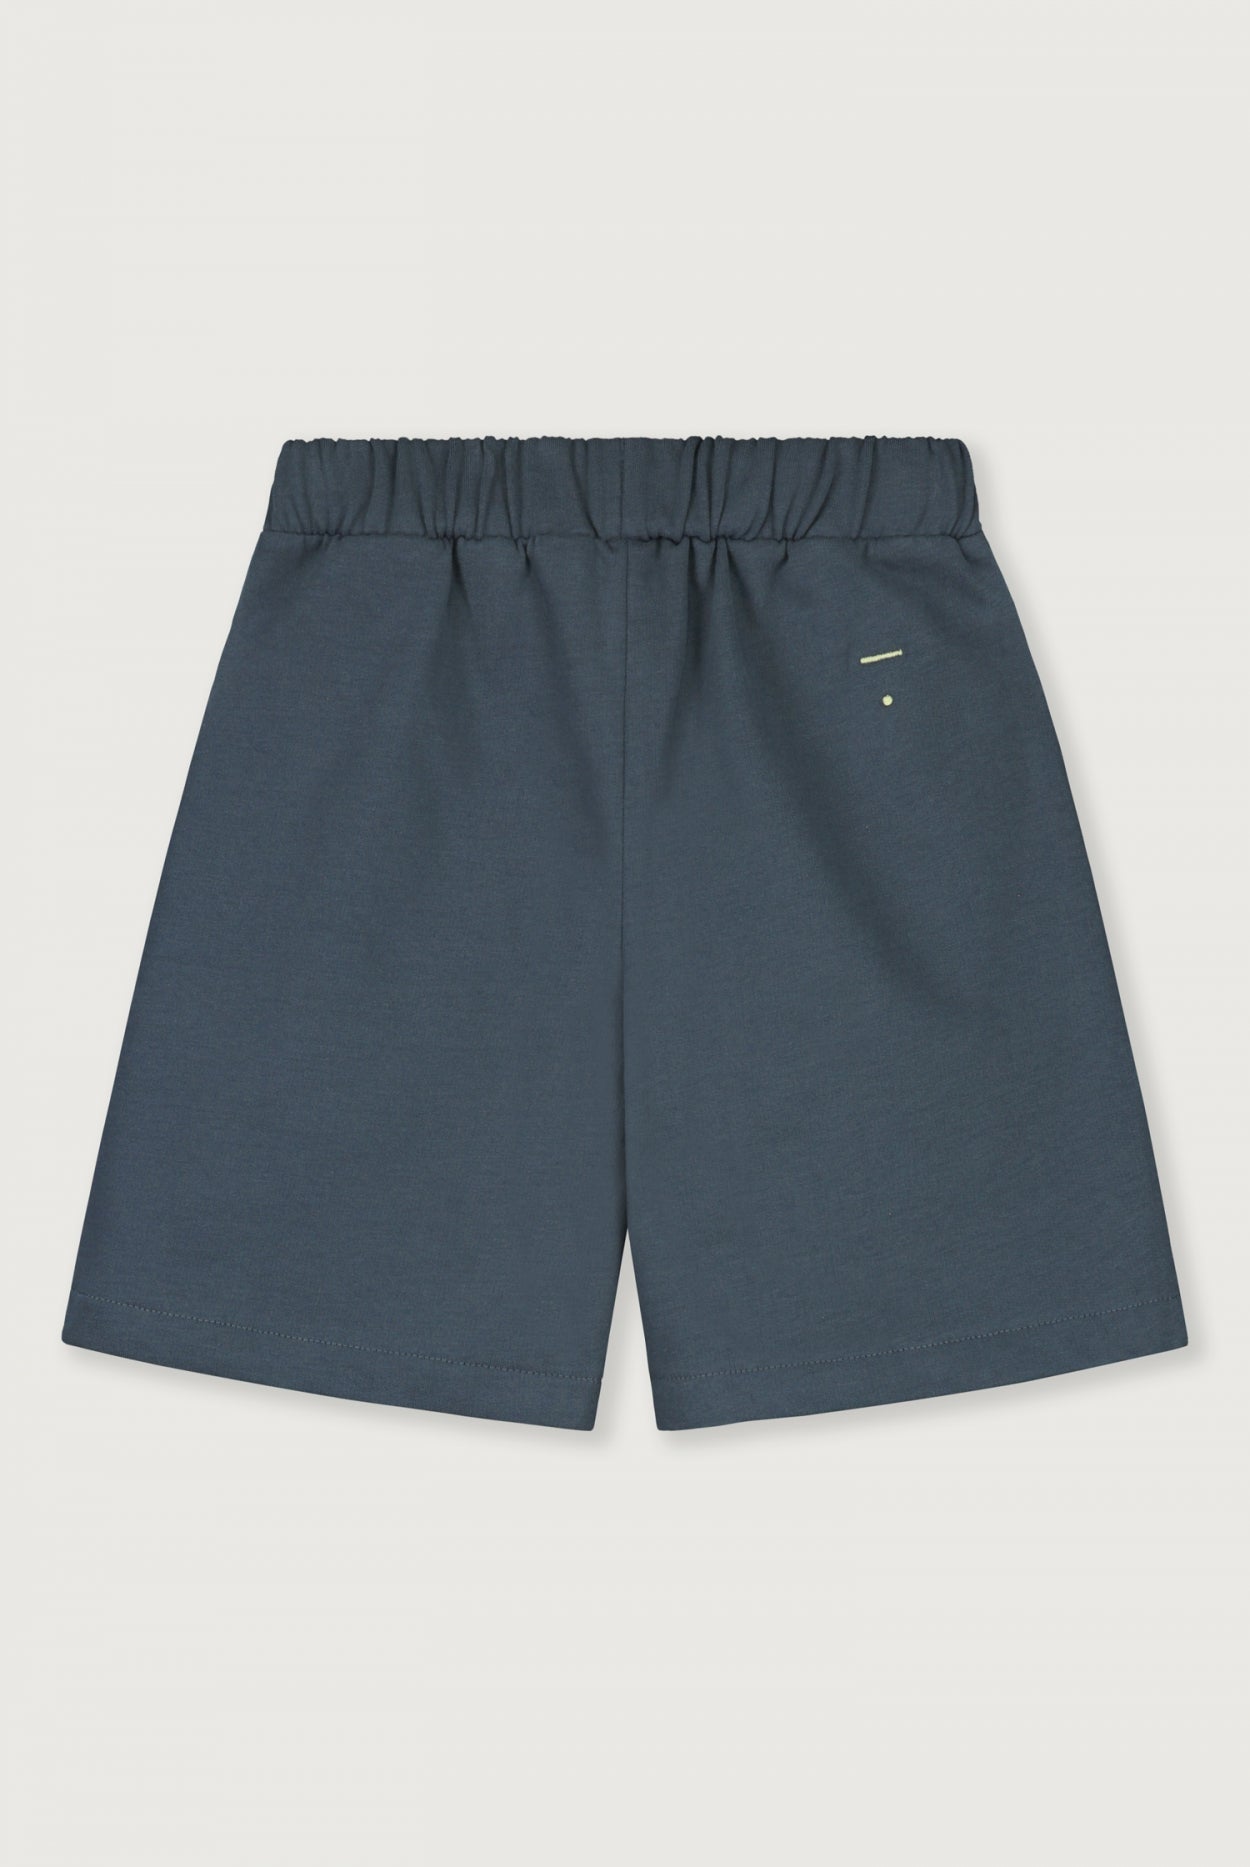 Bermuda Shorts Blue Grey